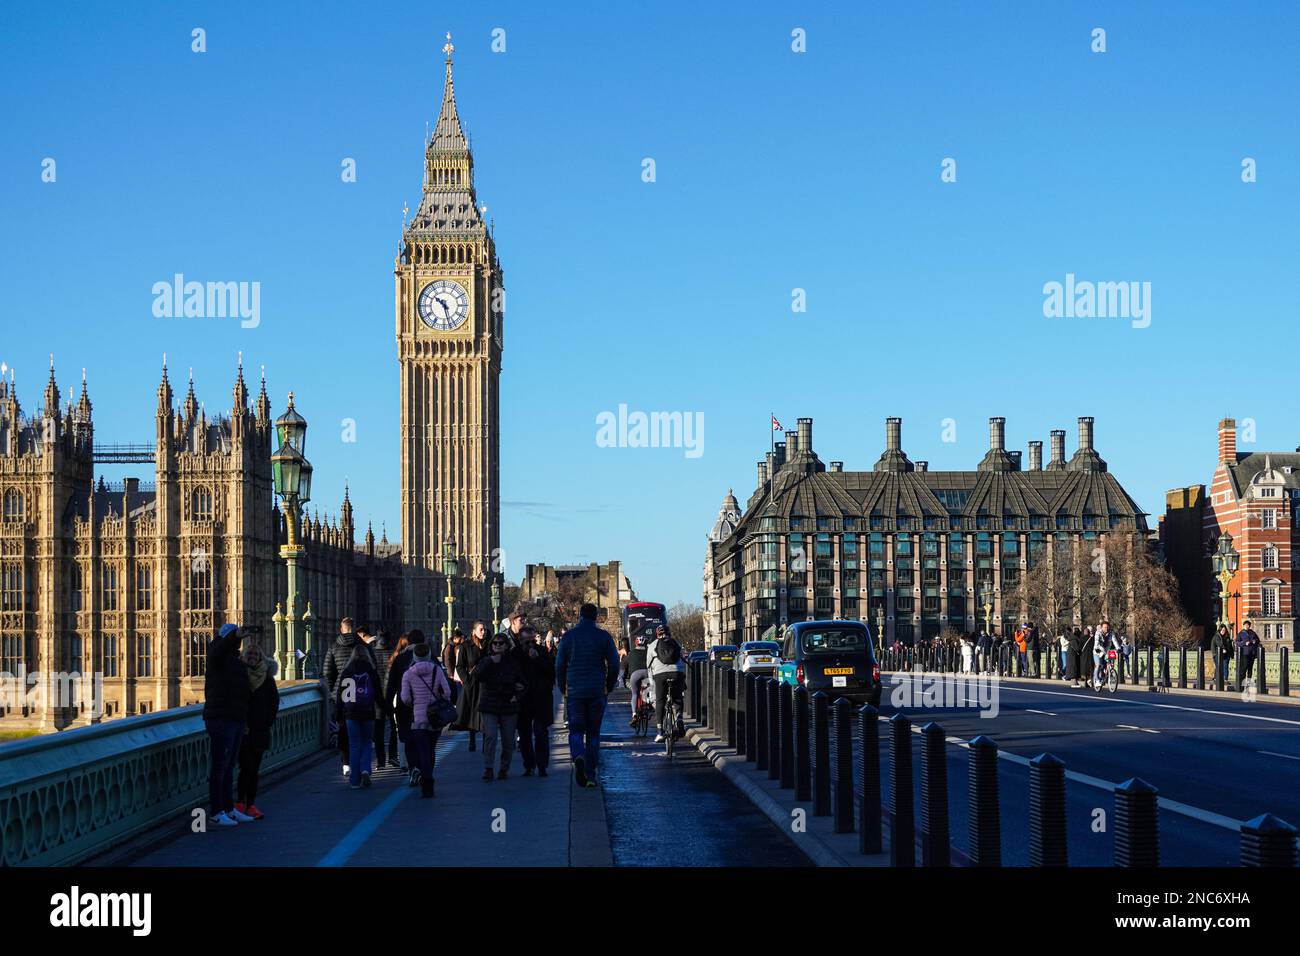 Touristen auf der Westminster Bridge mit dem Big Ben Uhrenturm und dem Palace of Westminster im Hintergrund, London England Großbritannien Stockfoto